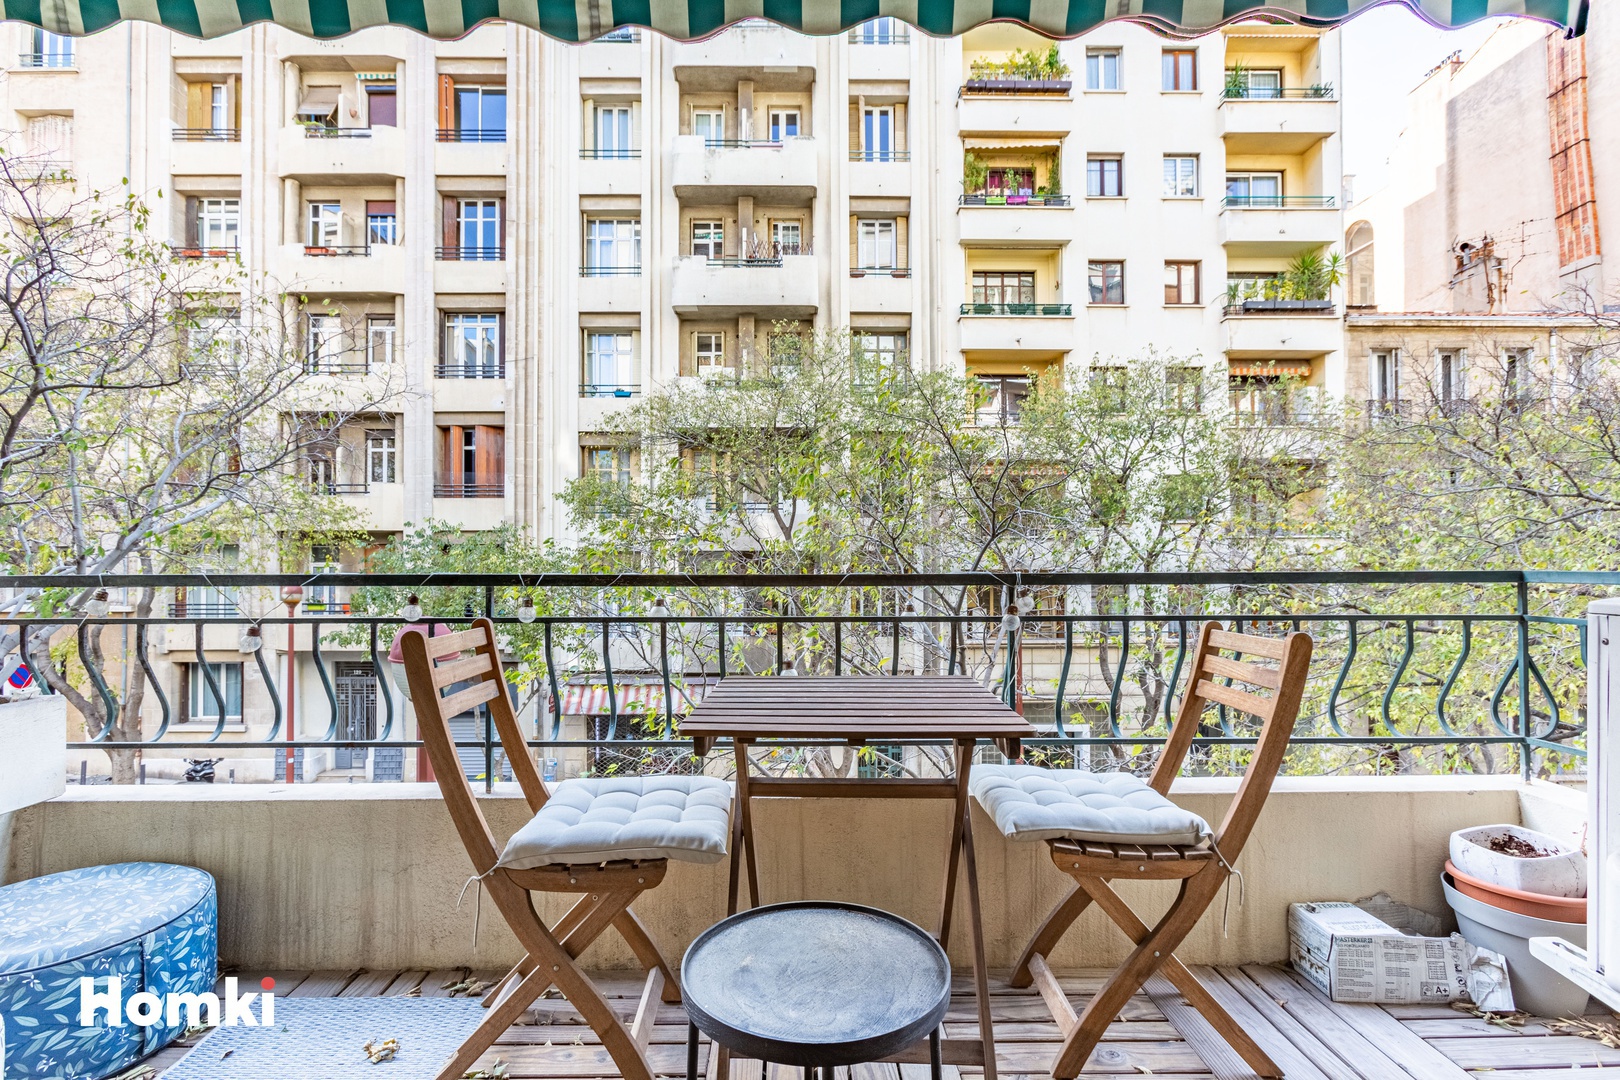 Homki - Vente Appartement  de 77.0 m² à Marseille 13006